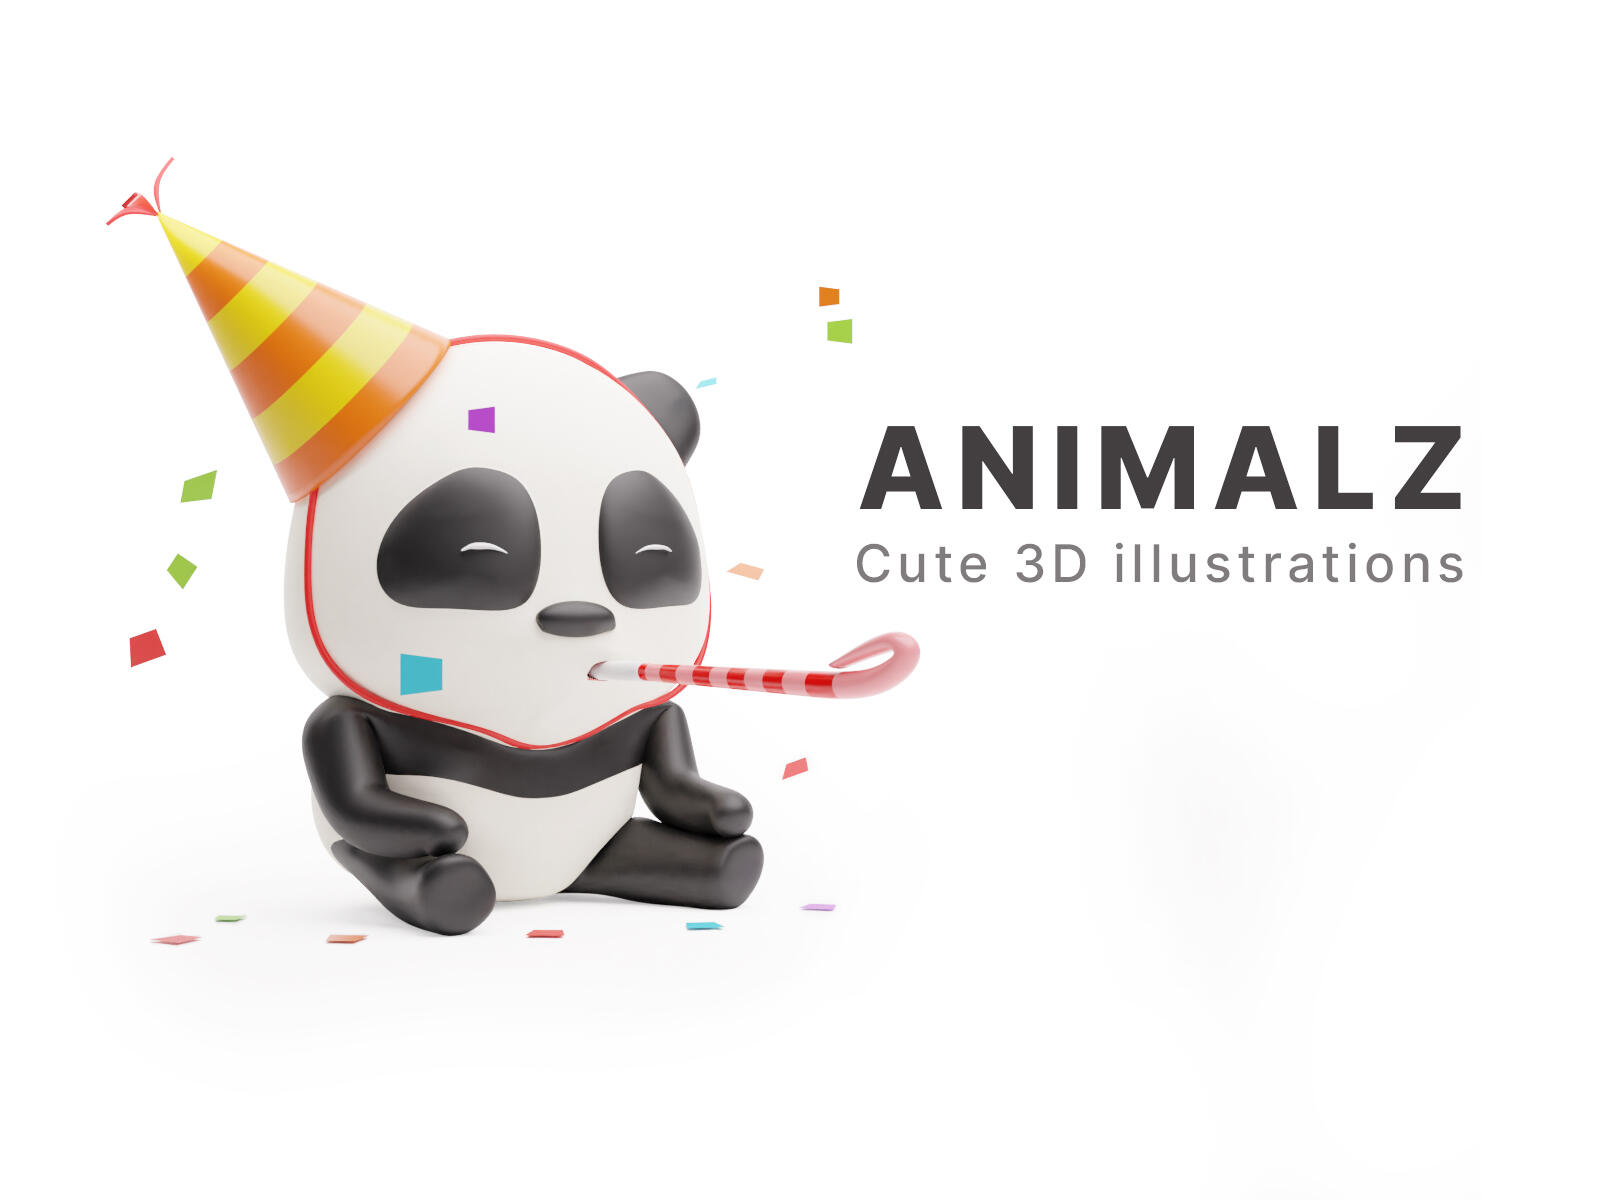 ANIMALZ - Cute 3D animals